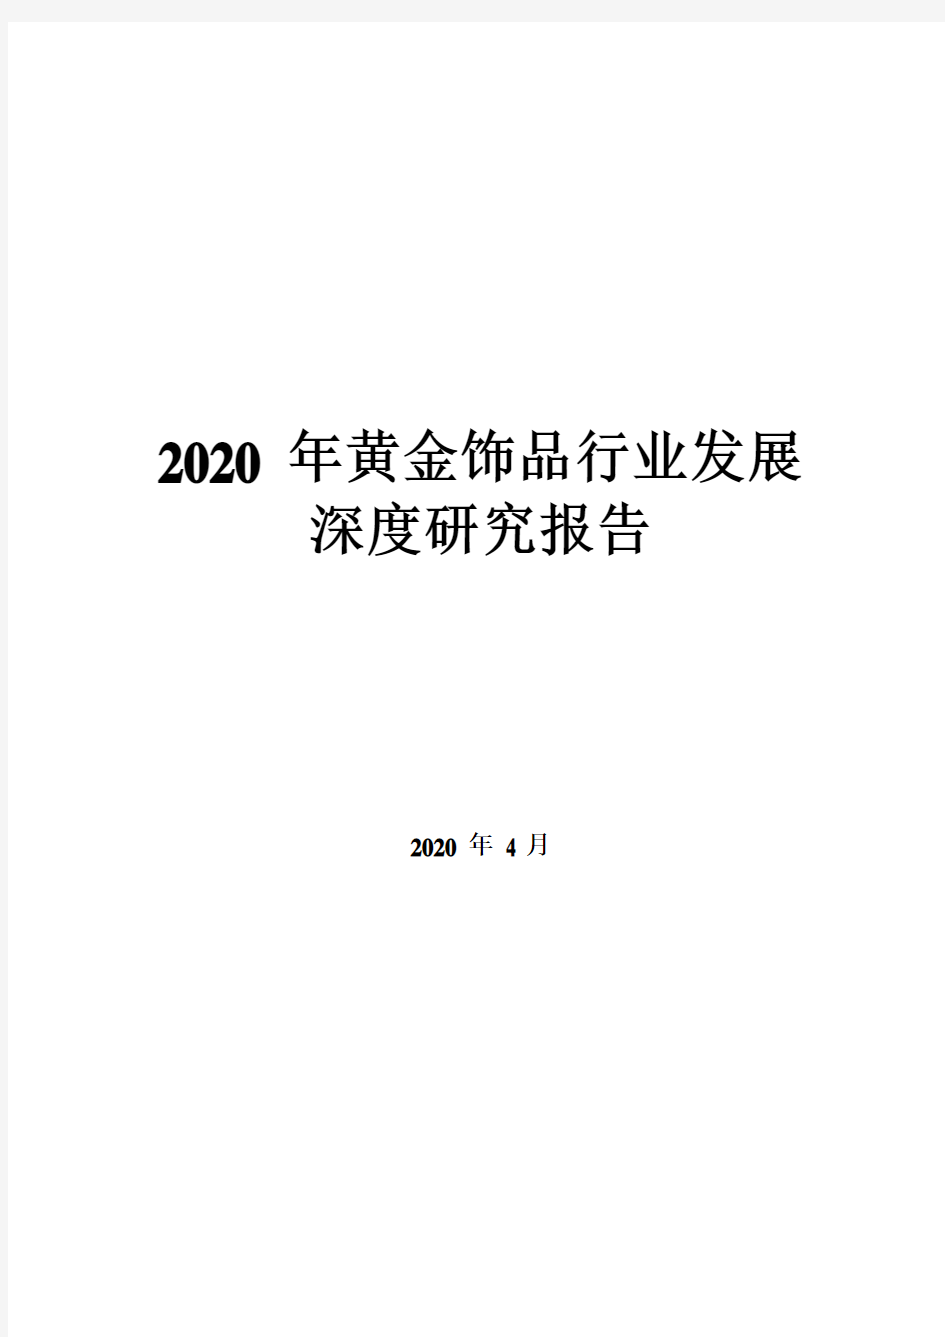 2020年黄金饰品行业发展深度研究报告